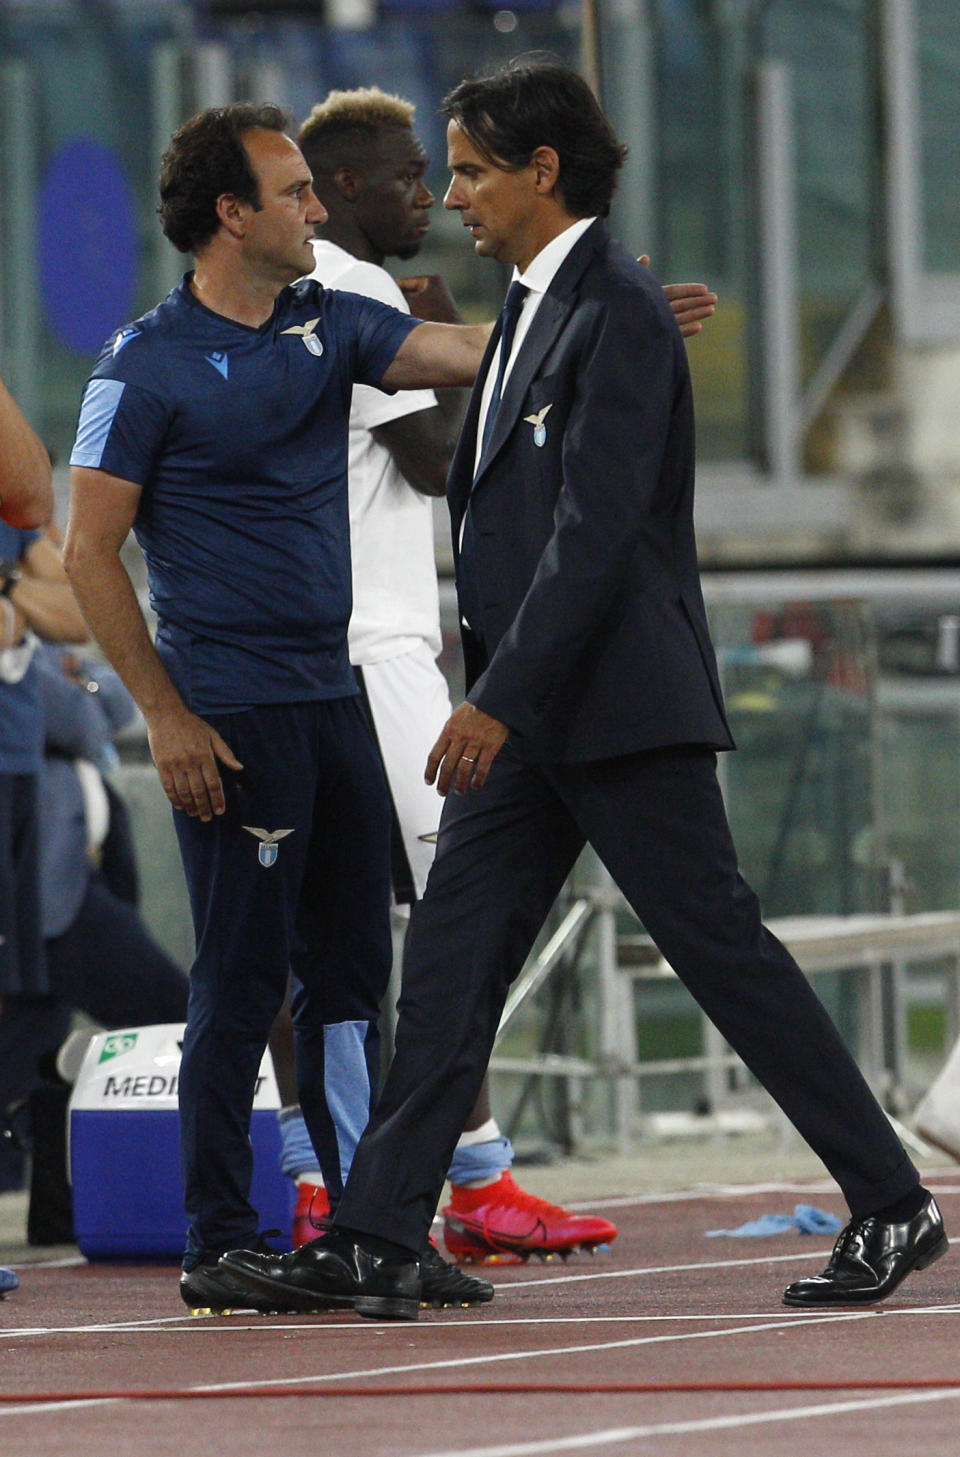 El técnico de Lazio Simone Inzaghi sale de la cancha expulsado durante un partido contra Fiorentina en Roma el 27 de junio del 2020. (AP Photo/Riccardo de Luca)